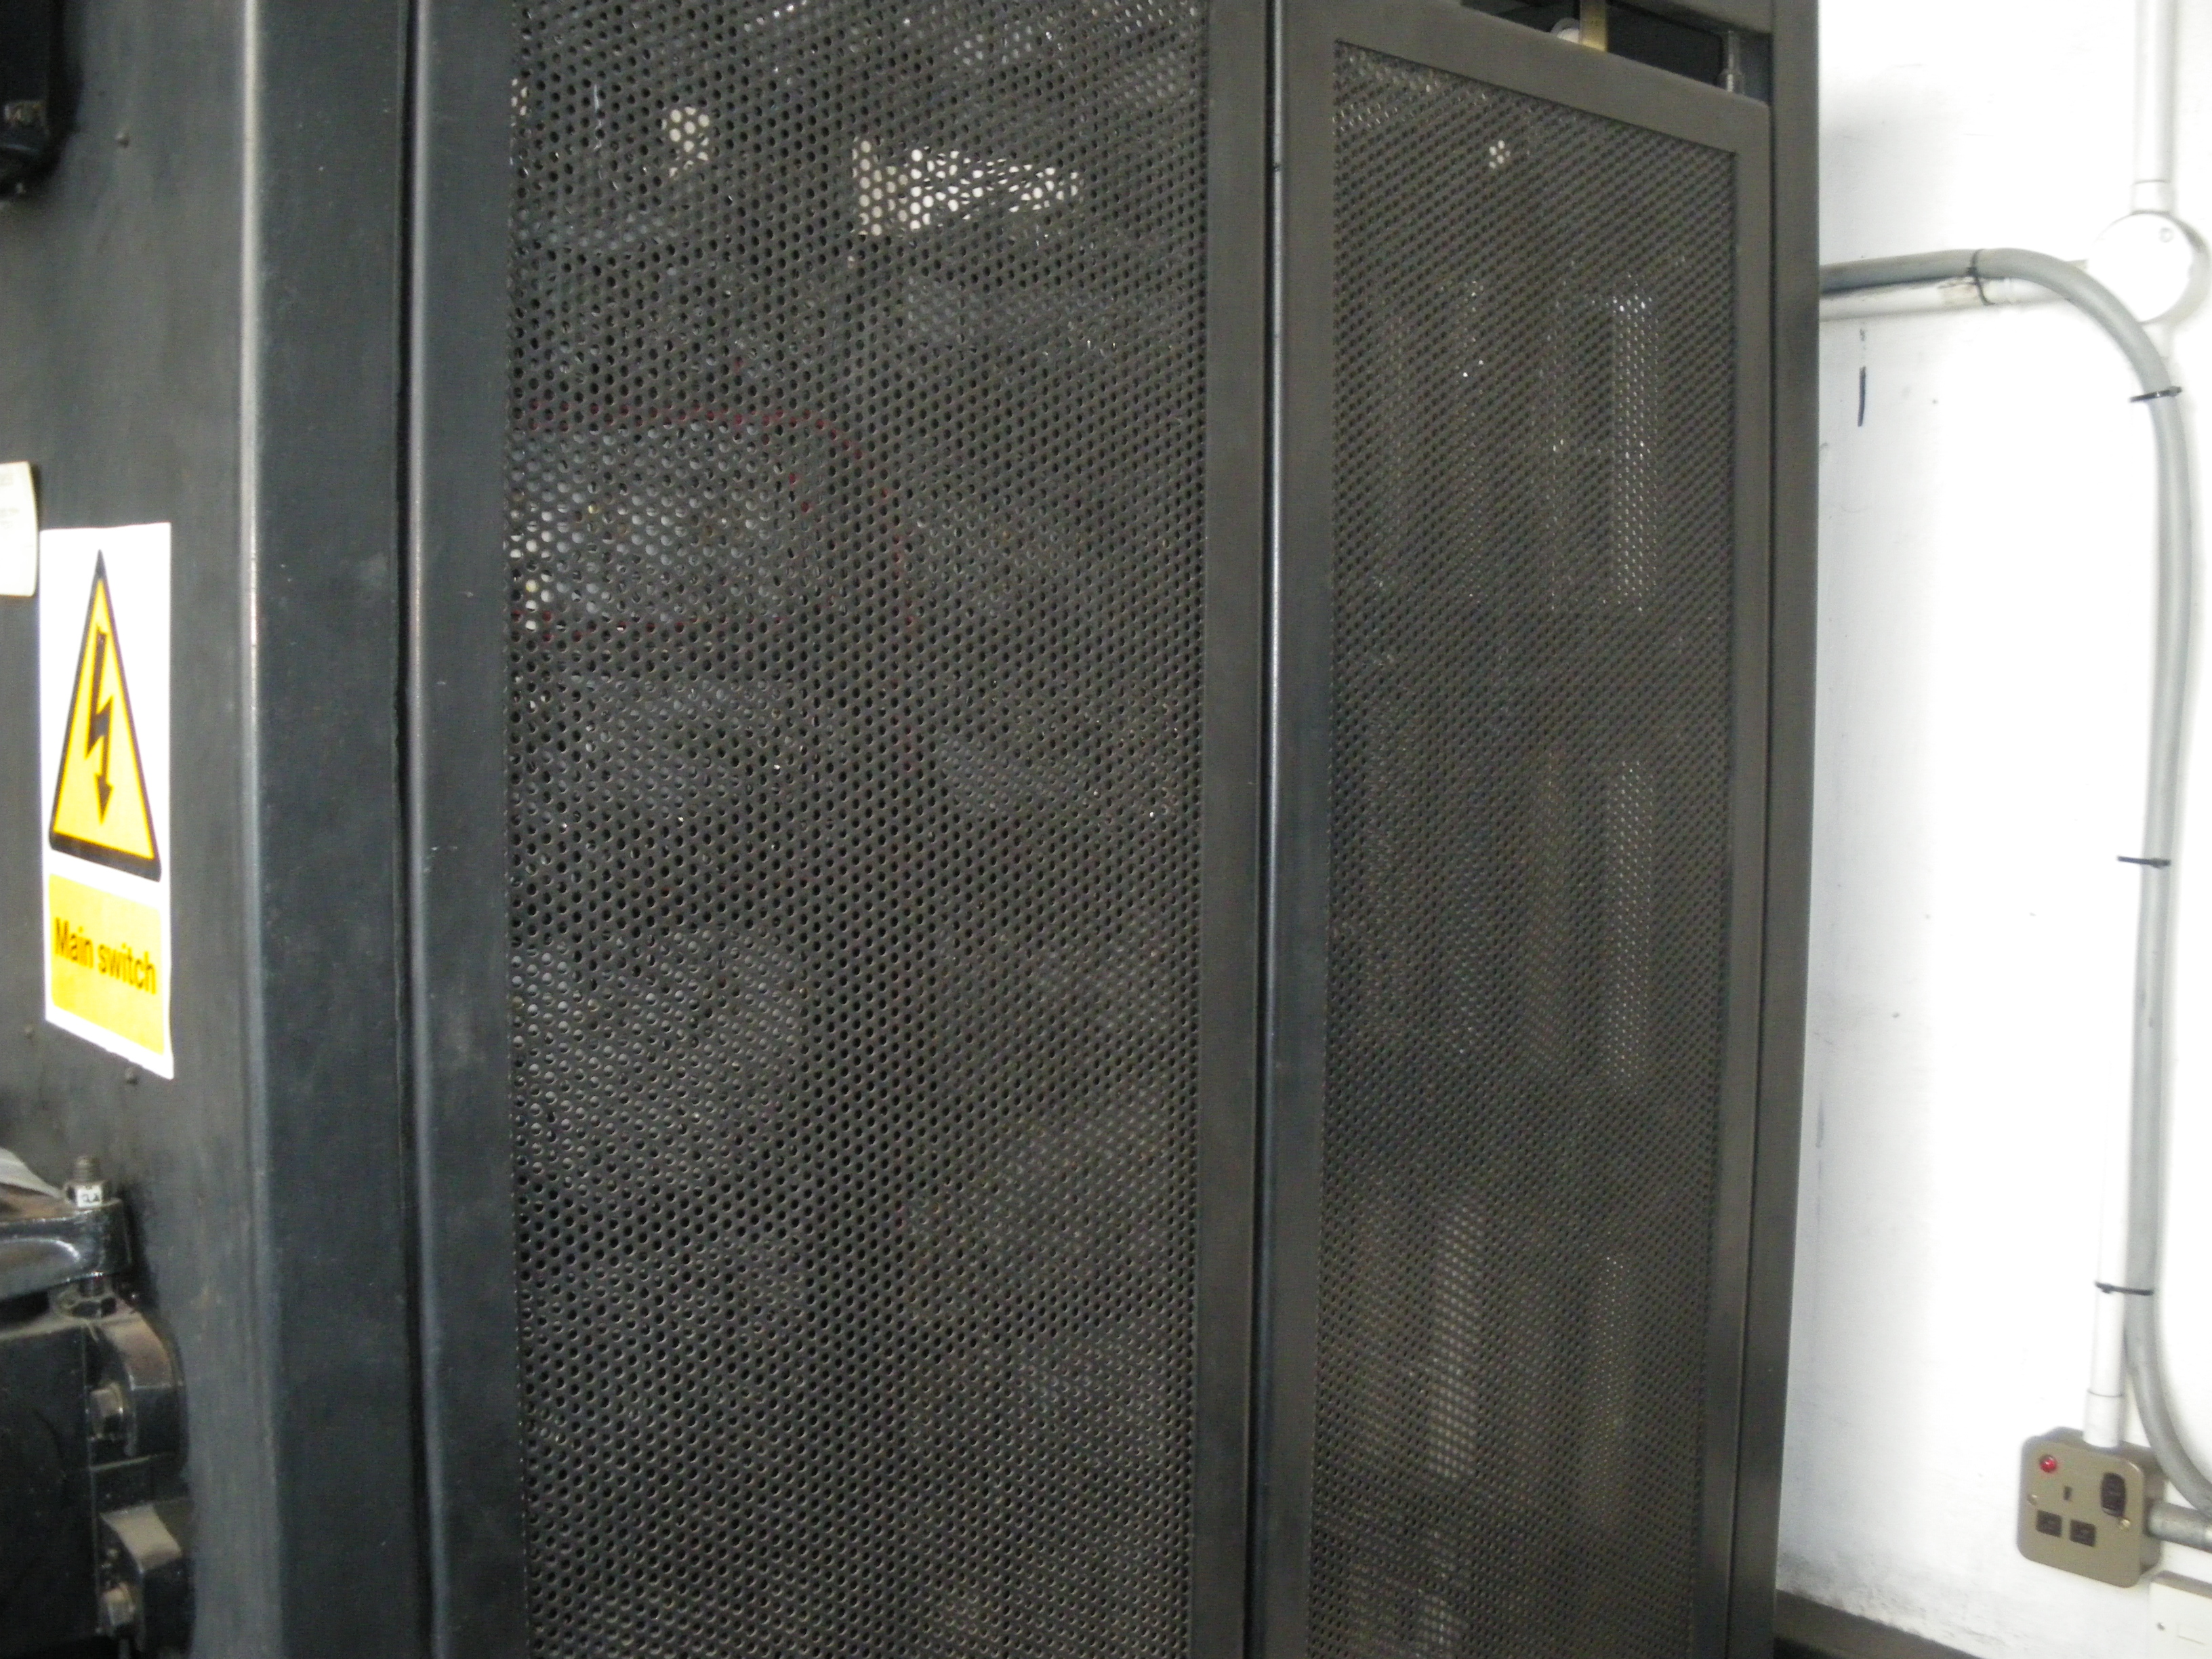 E lift, rear of control cabinet.